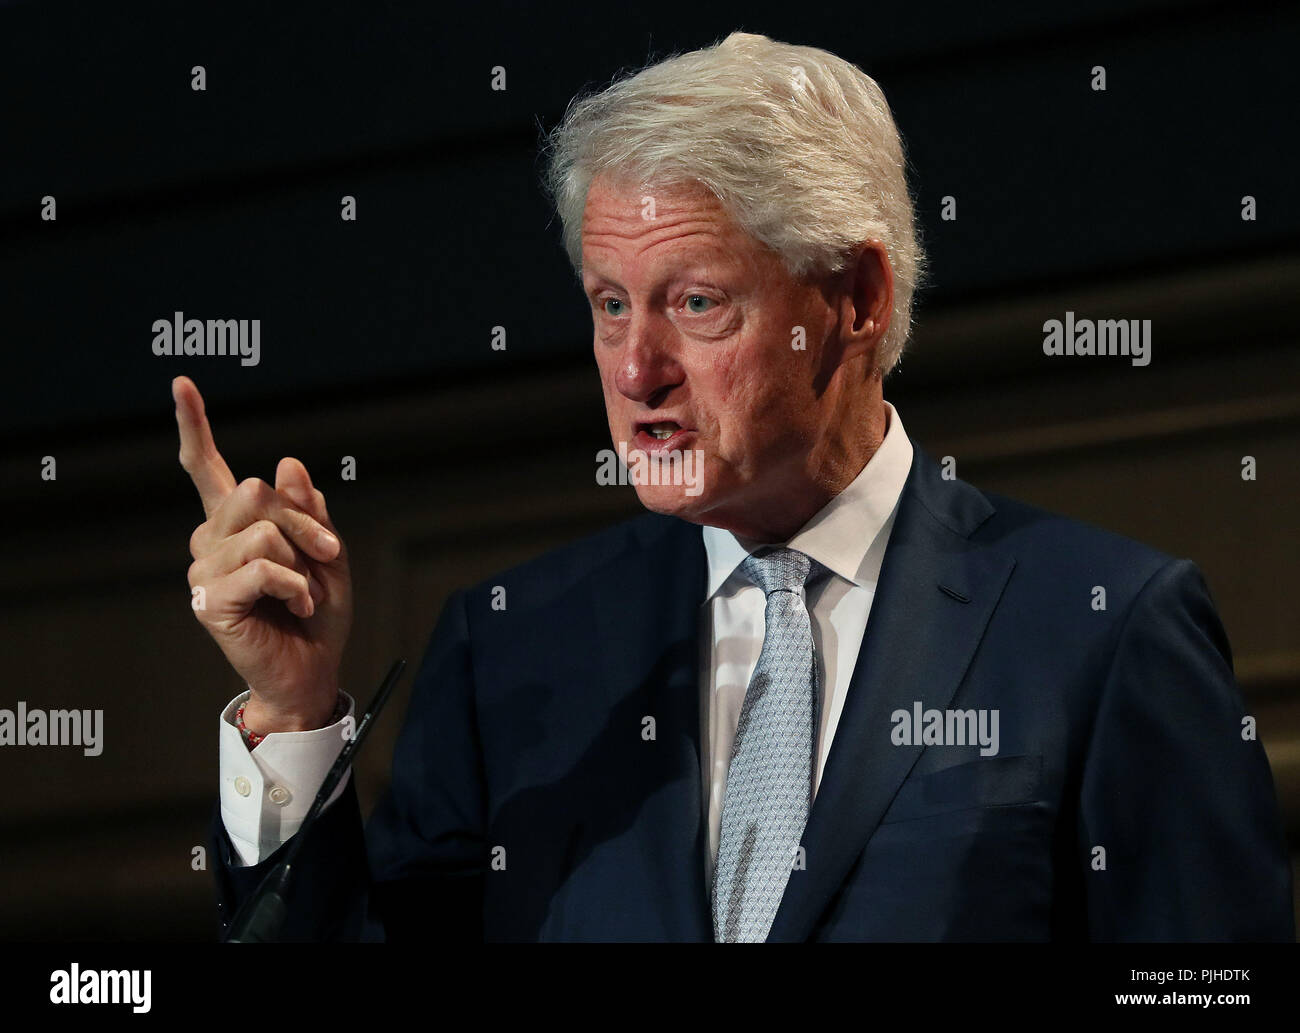 El ex presidente estadounidense Bill Clinton, hablando en una conferencia en Dublín preocupación en todo el mundo. Foto de stock